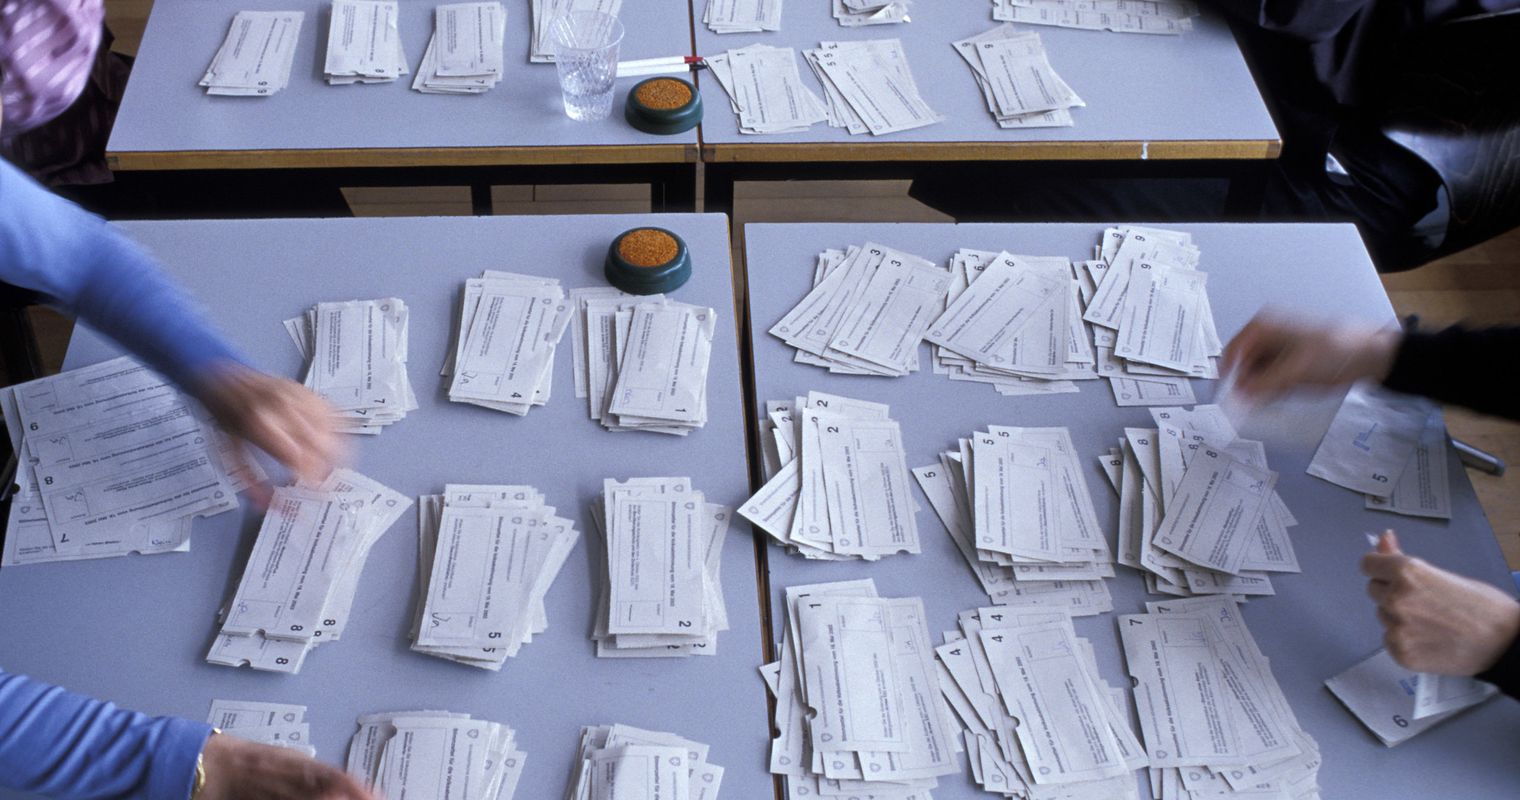 Knatsch in Zug: Verwaltung ändert heimlich Stimmzettel